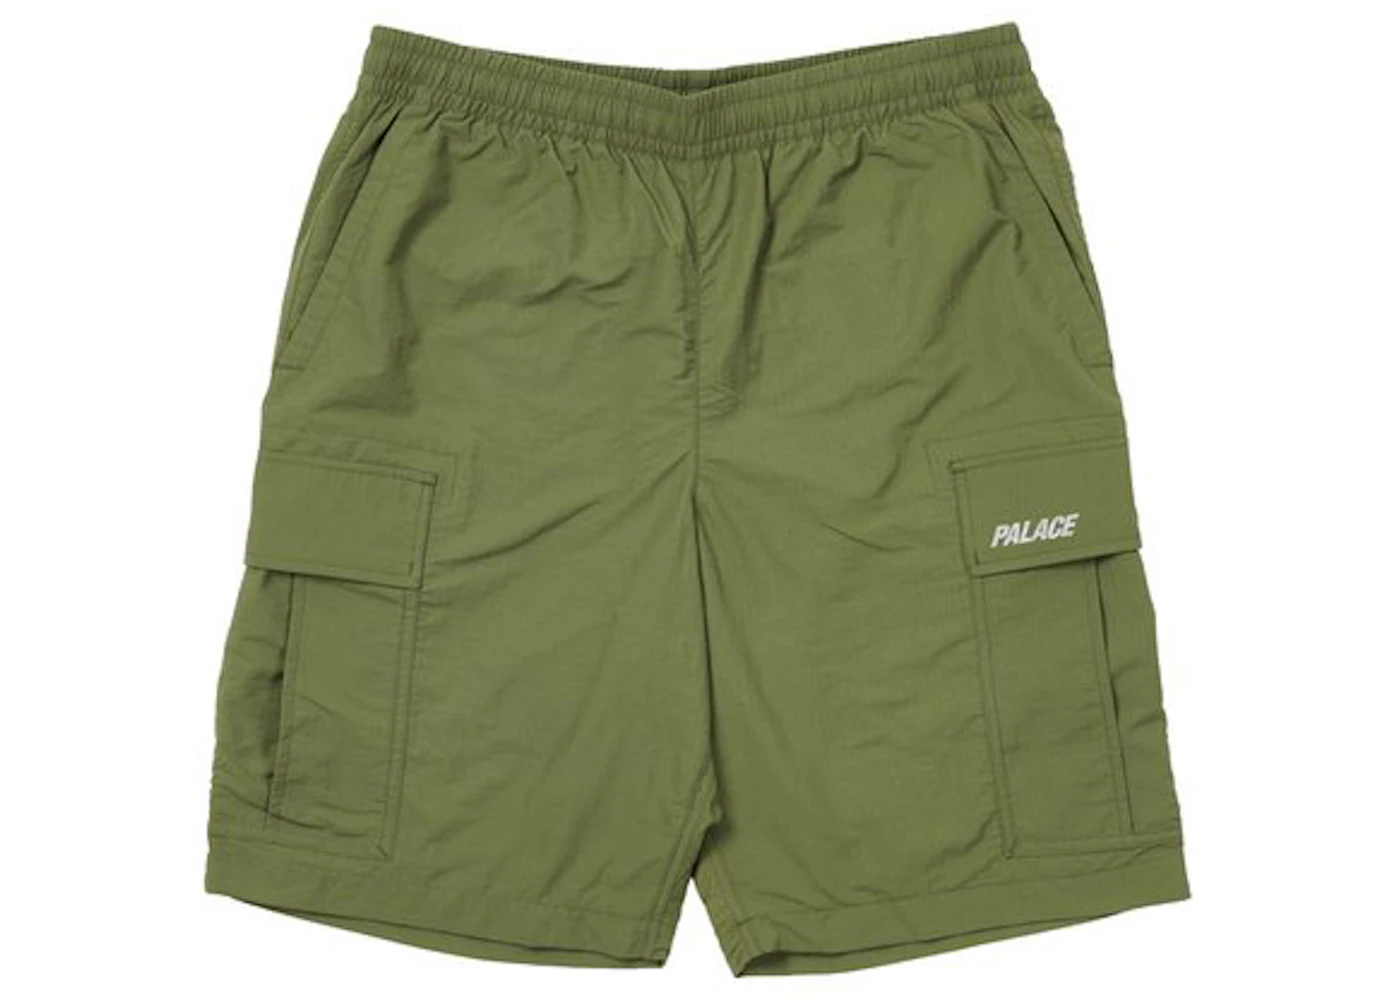 Palace Shell Cargo Shorts (FW21) Olive - FW21 Men's - US